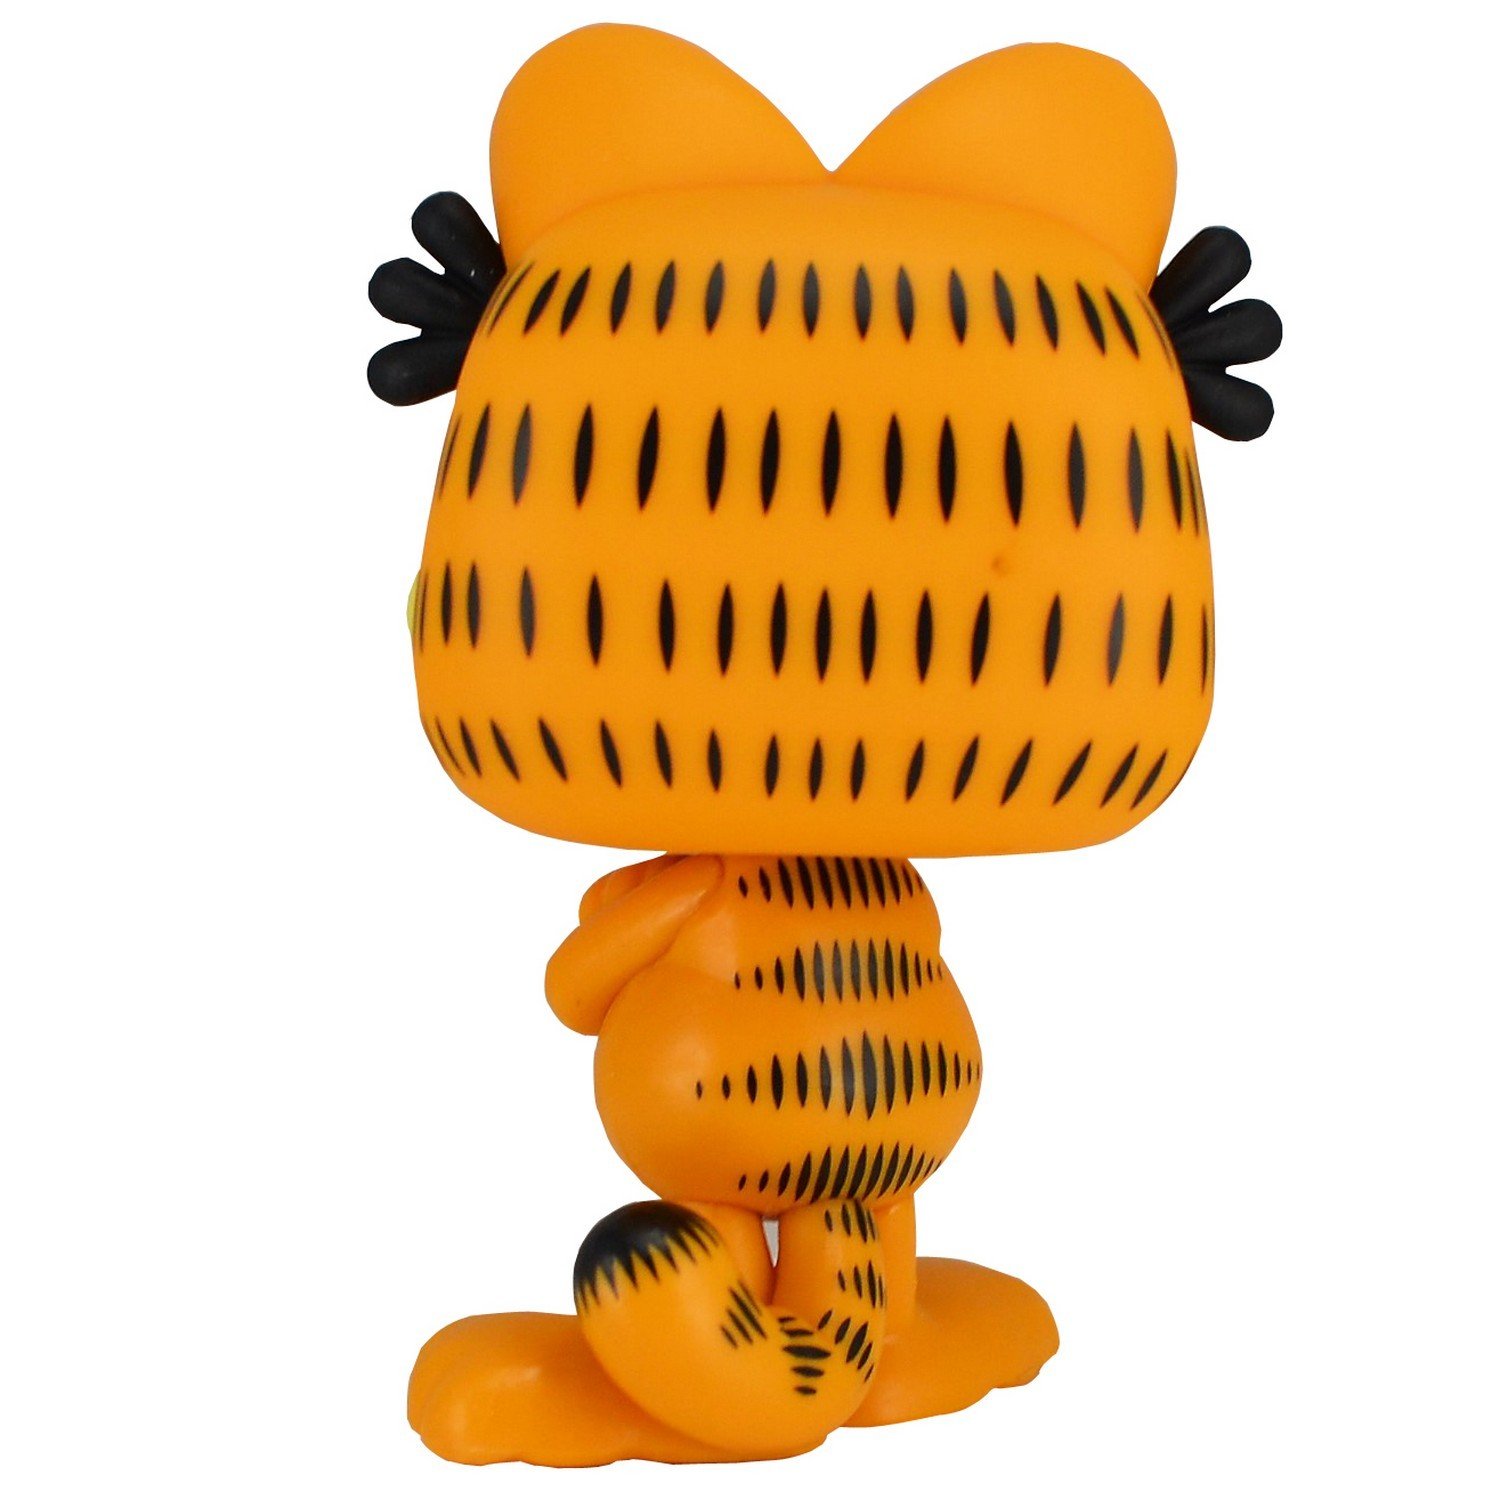 Игрушка Funko Pop Vinyl Garfield Fun2421